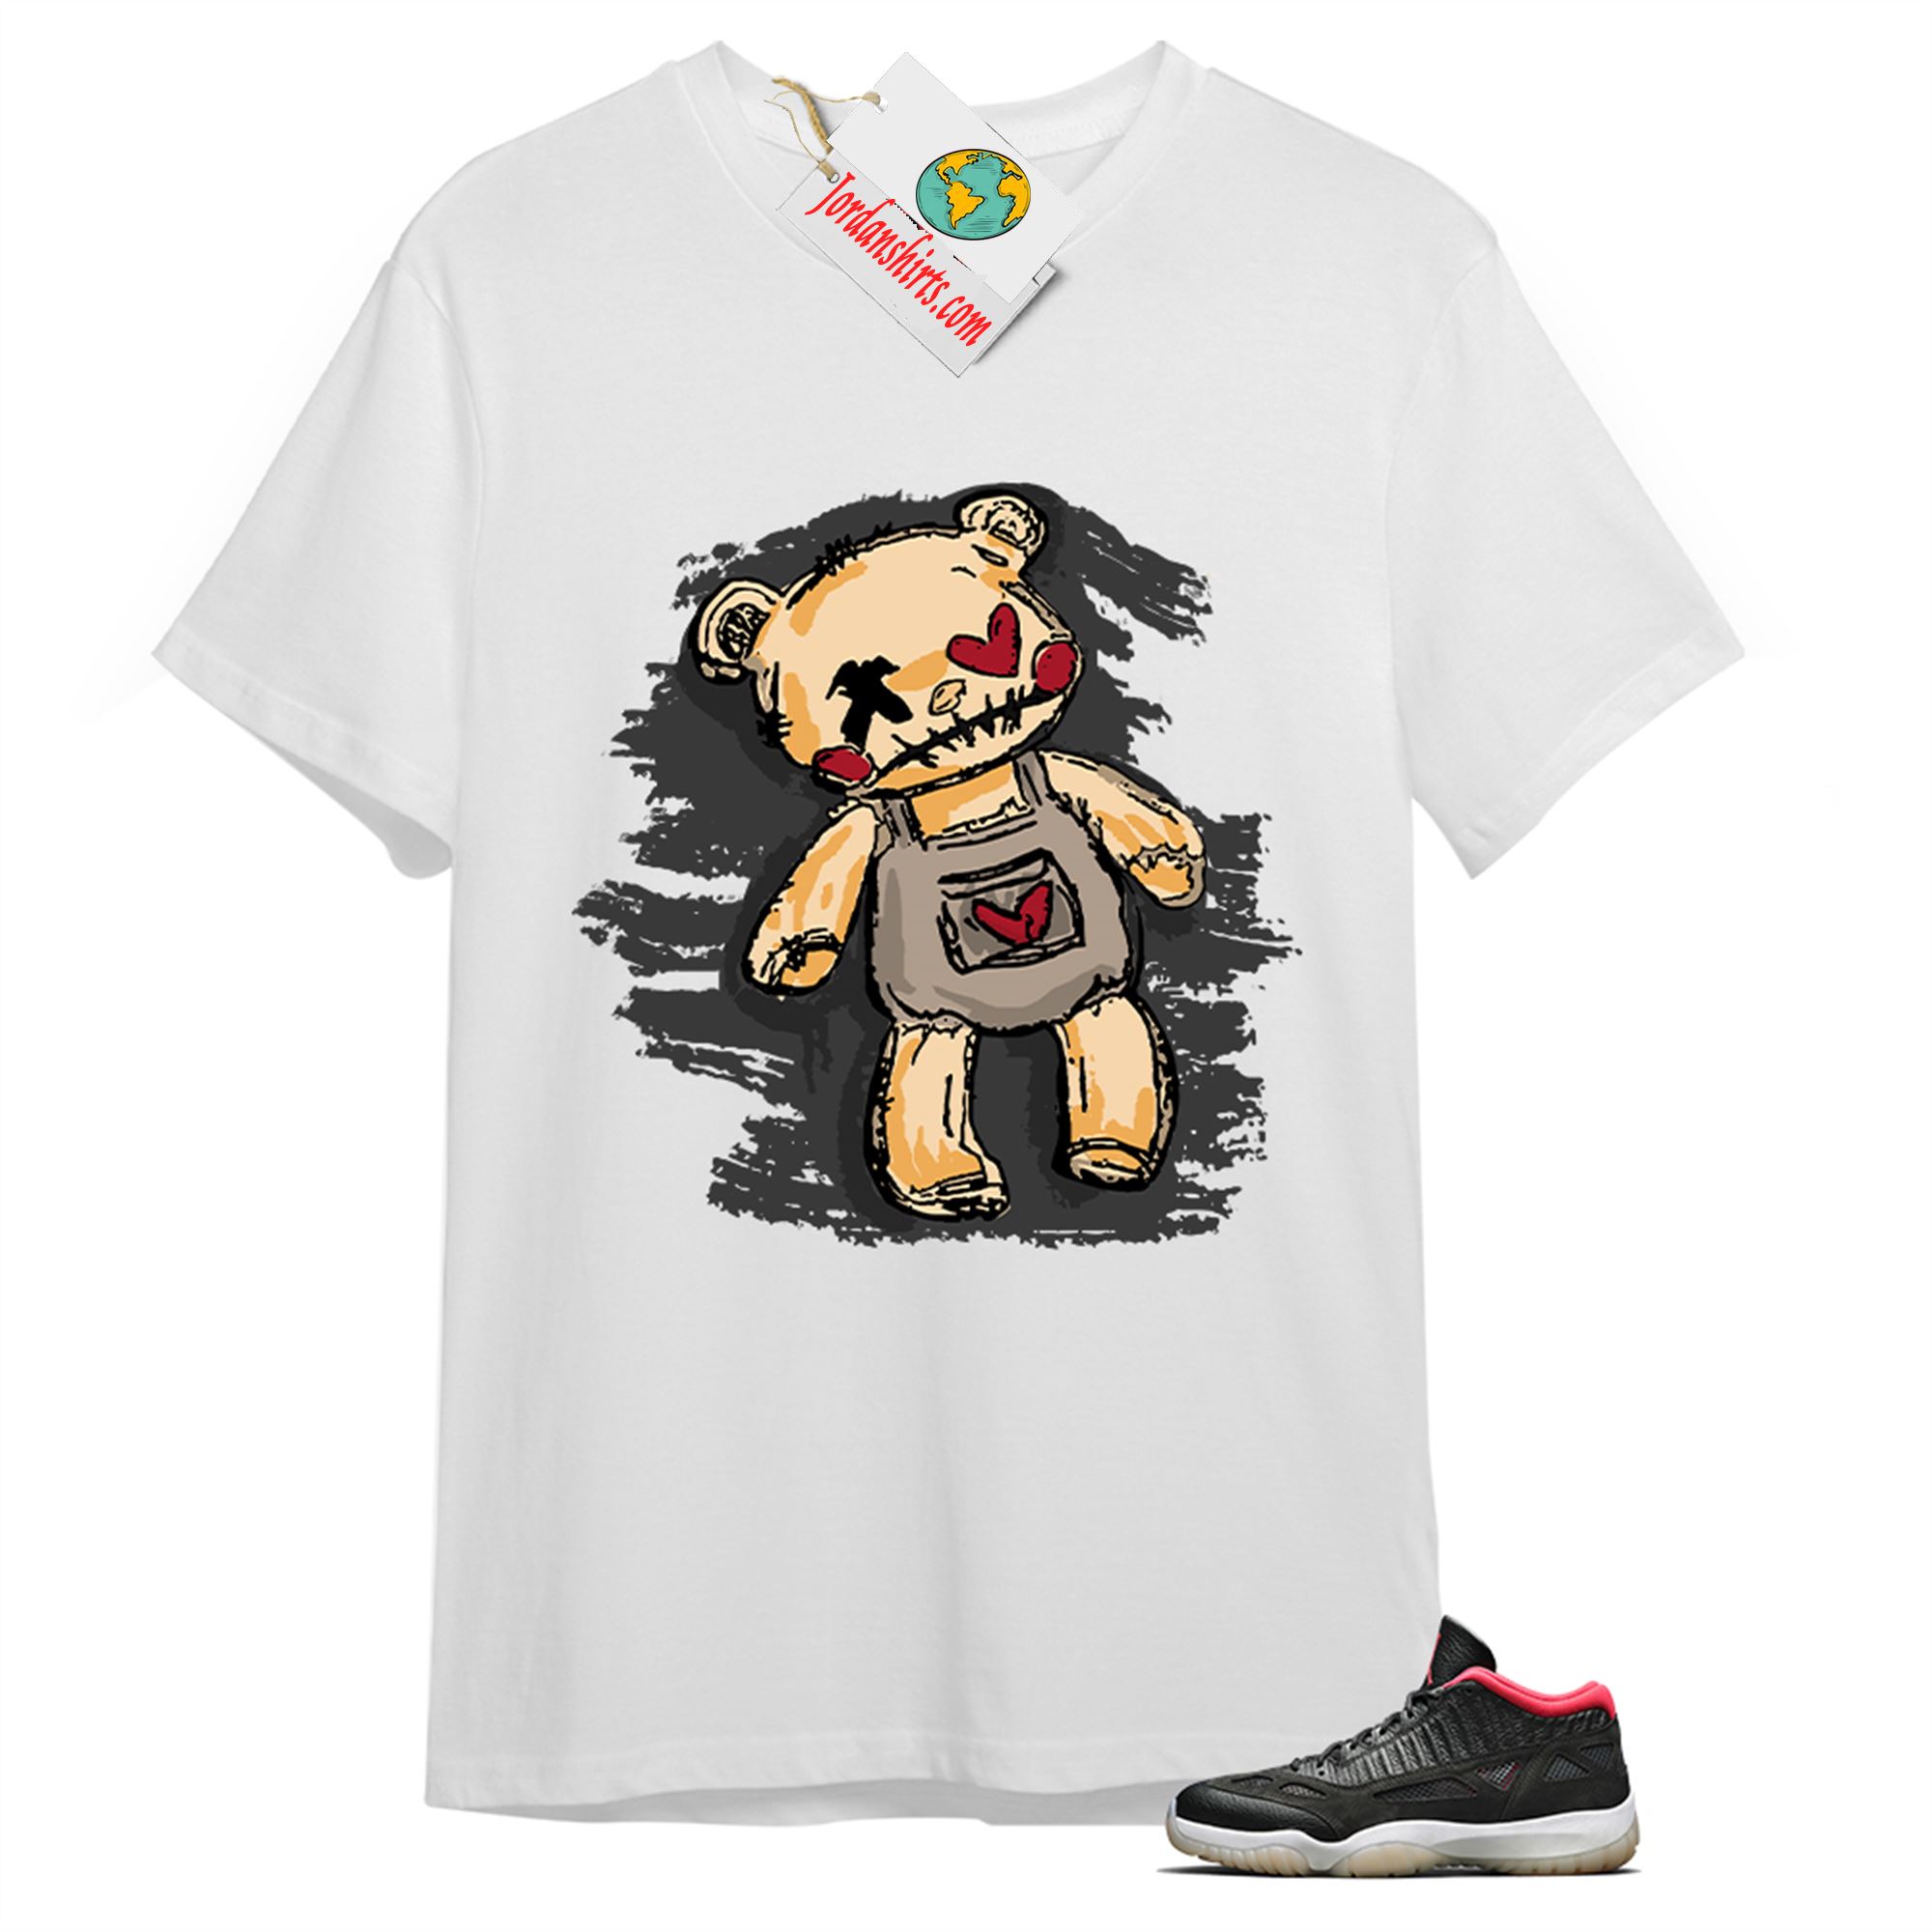 Jordan 11 Shirt, Teddy Bear Broken Heart White T-shirt Air Jordan 11 Bred 11s Size Up To 5xl